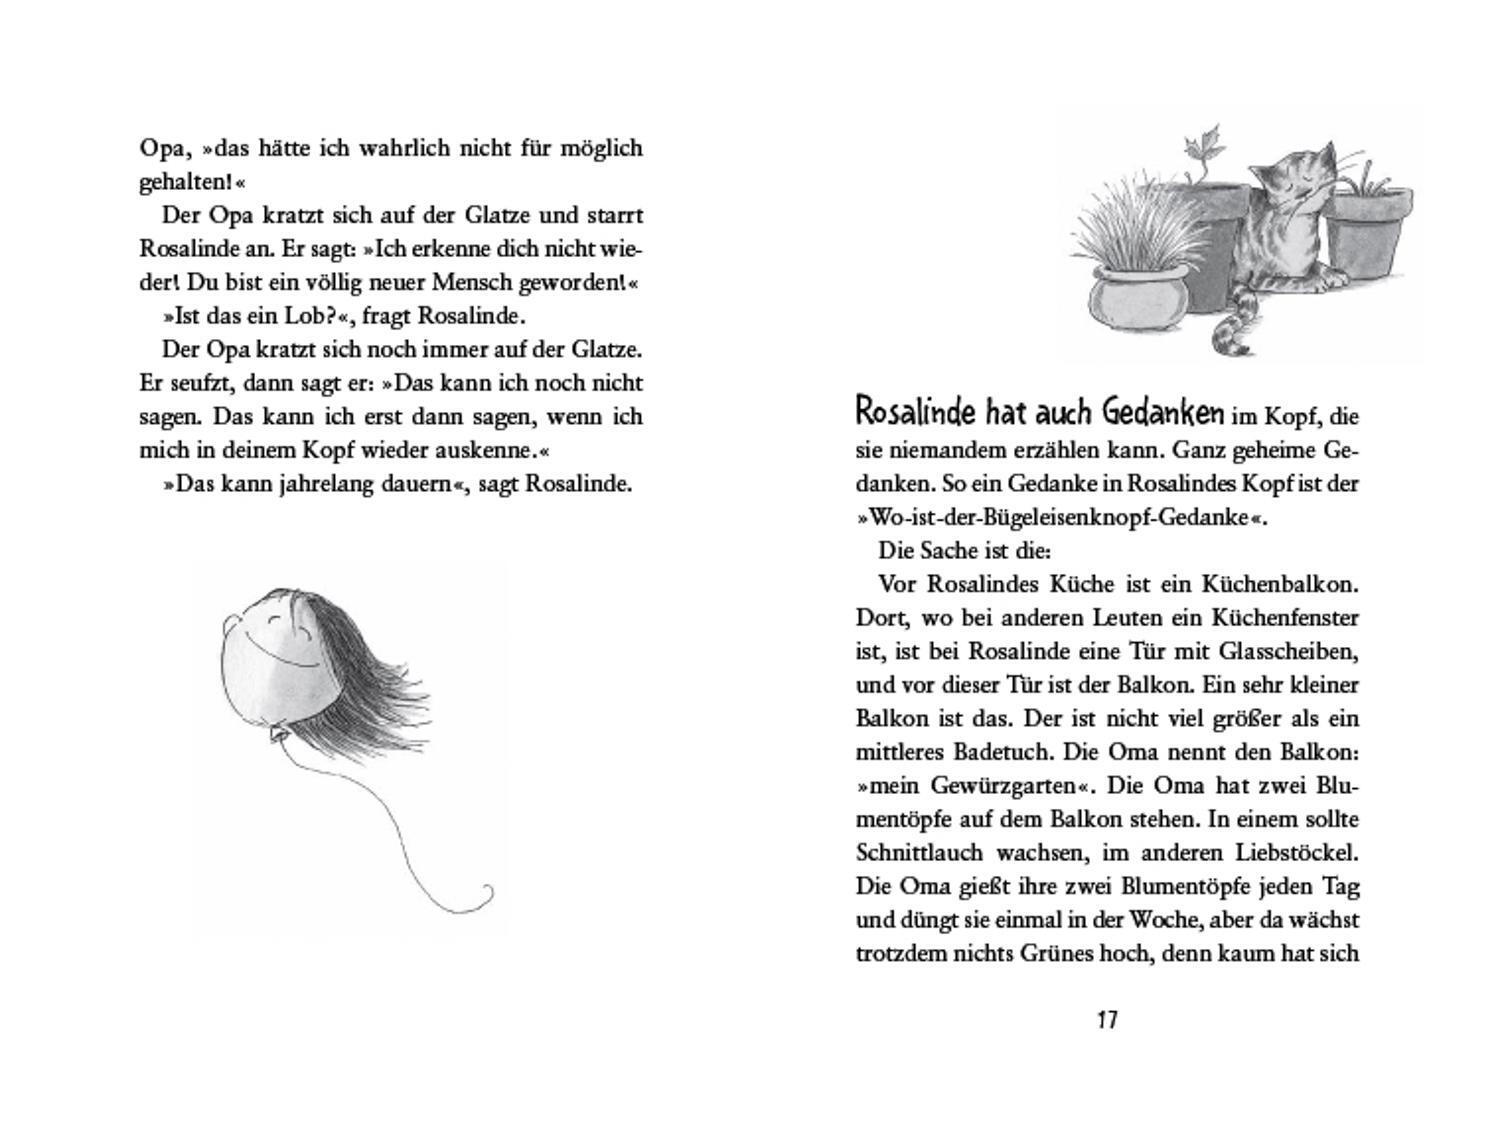 Bild: 9783789104633 | Rosalinde hat Gedanken im Kopf | Christine Nöstlinger | Buch | 96 S.